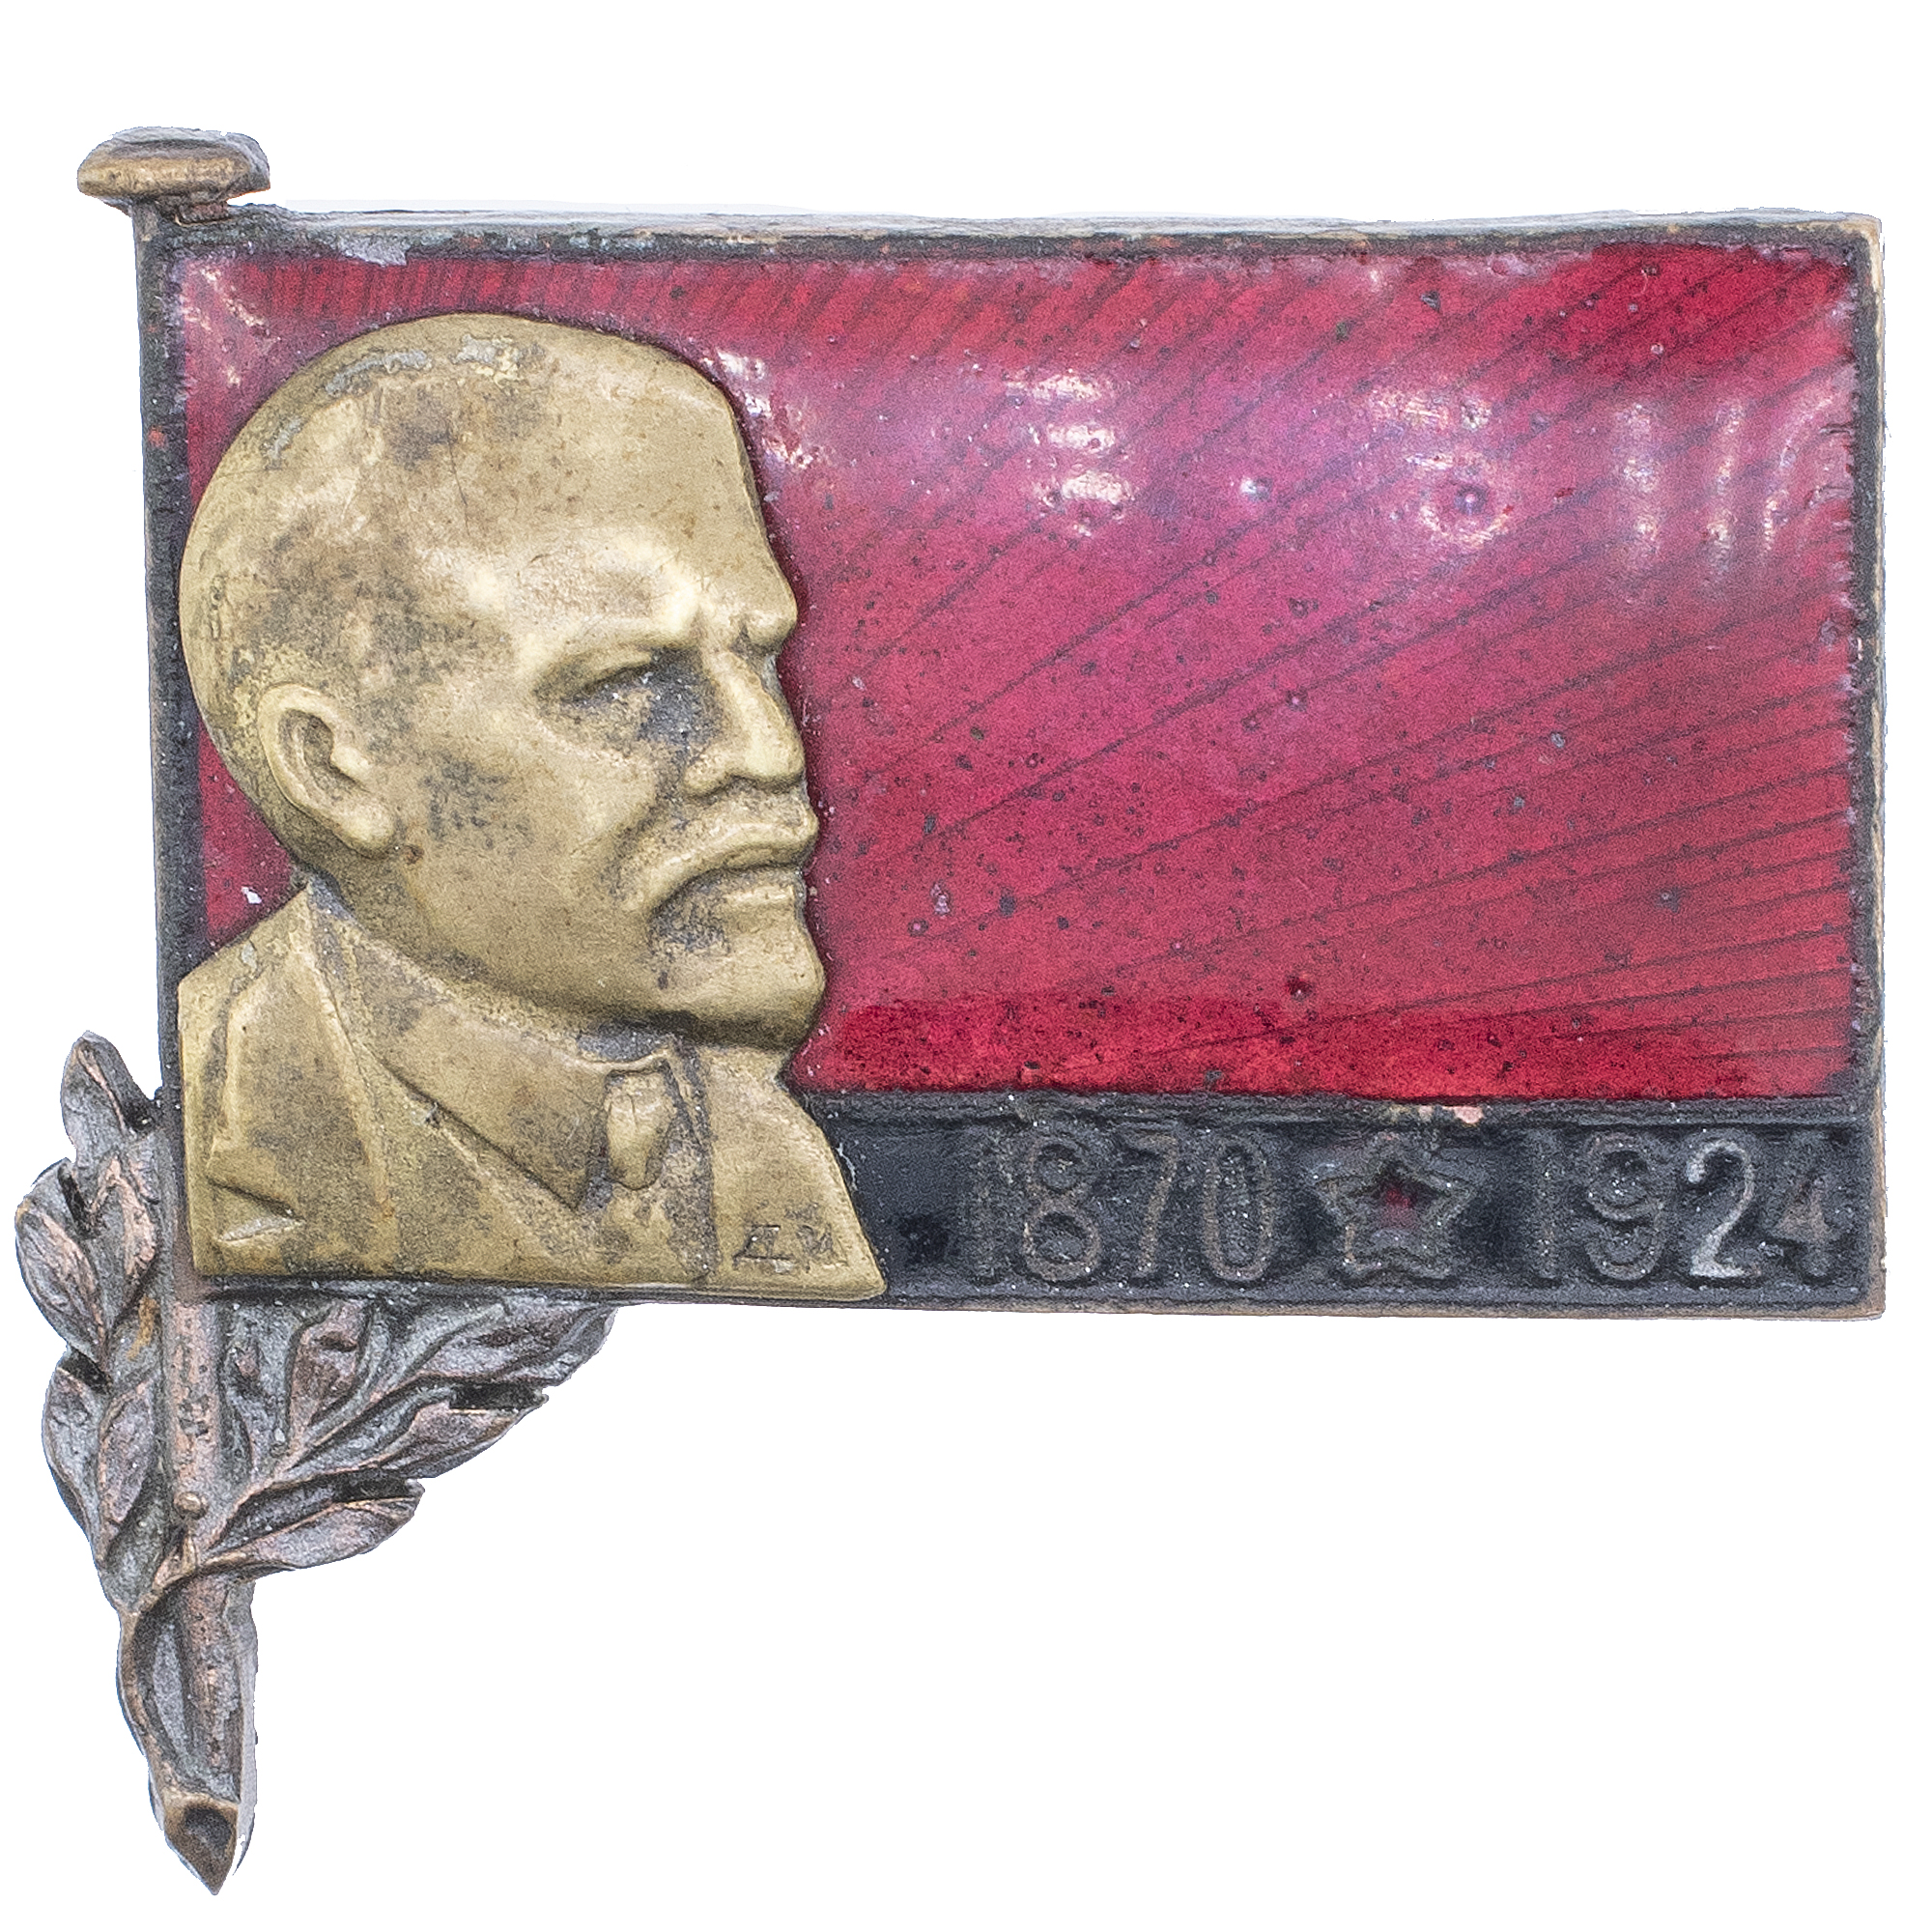 Траурный знак с изображением В. И. Ленина (1870 - 1924) б/н, бронза, АРТИКУЛ П21-11